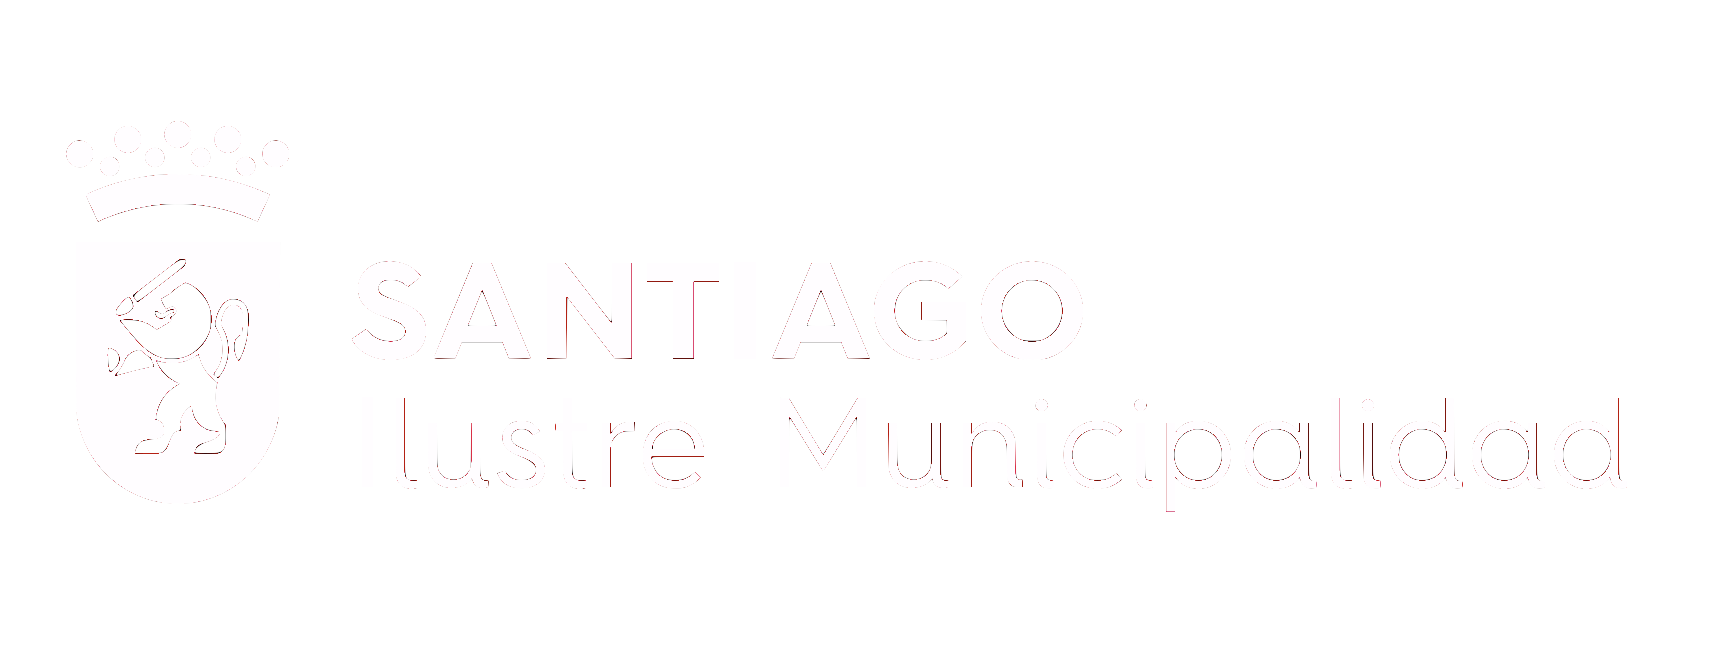 municipalidad santiago